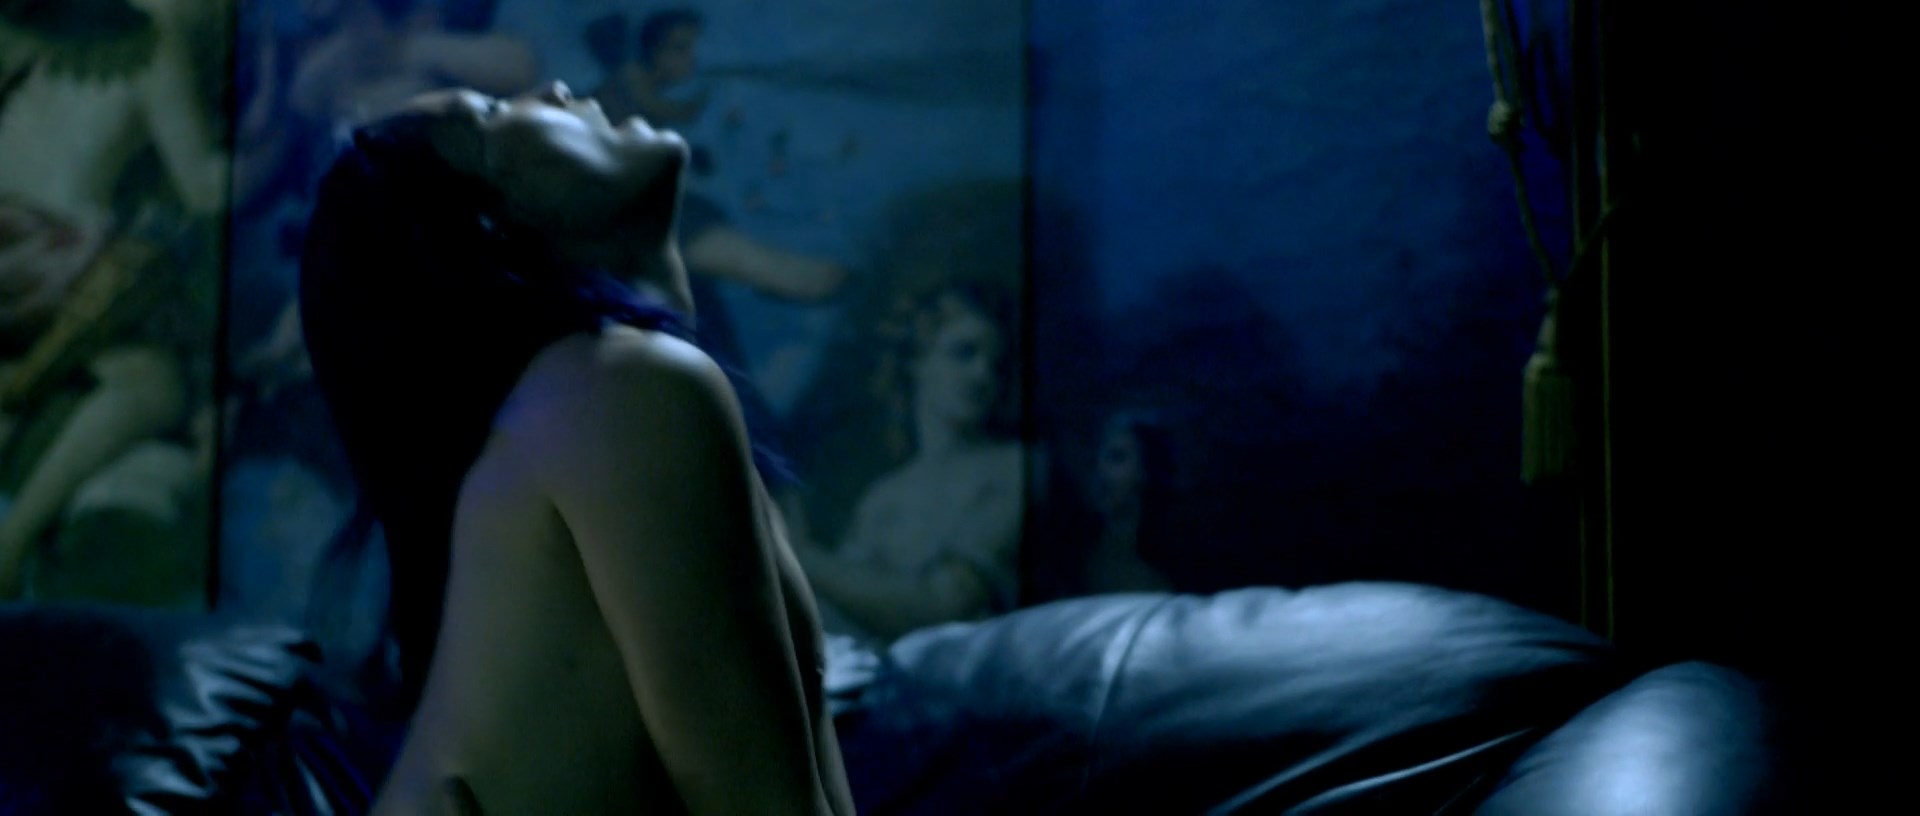 Www Pom Sex - Nude video celebs Â» Actress Â» Pom Klementieff